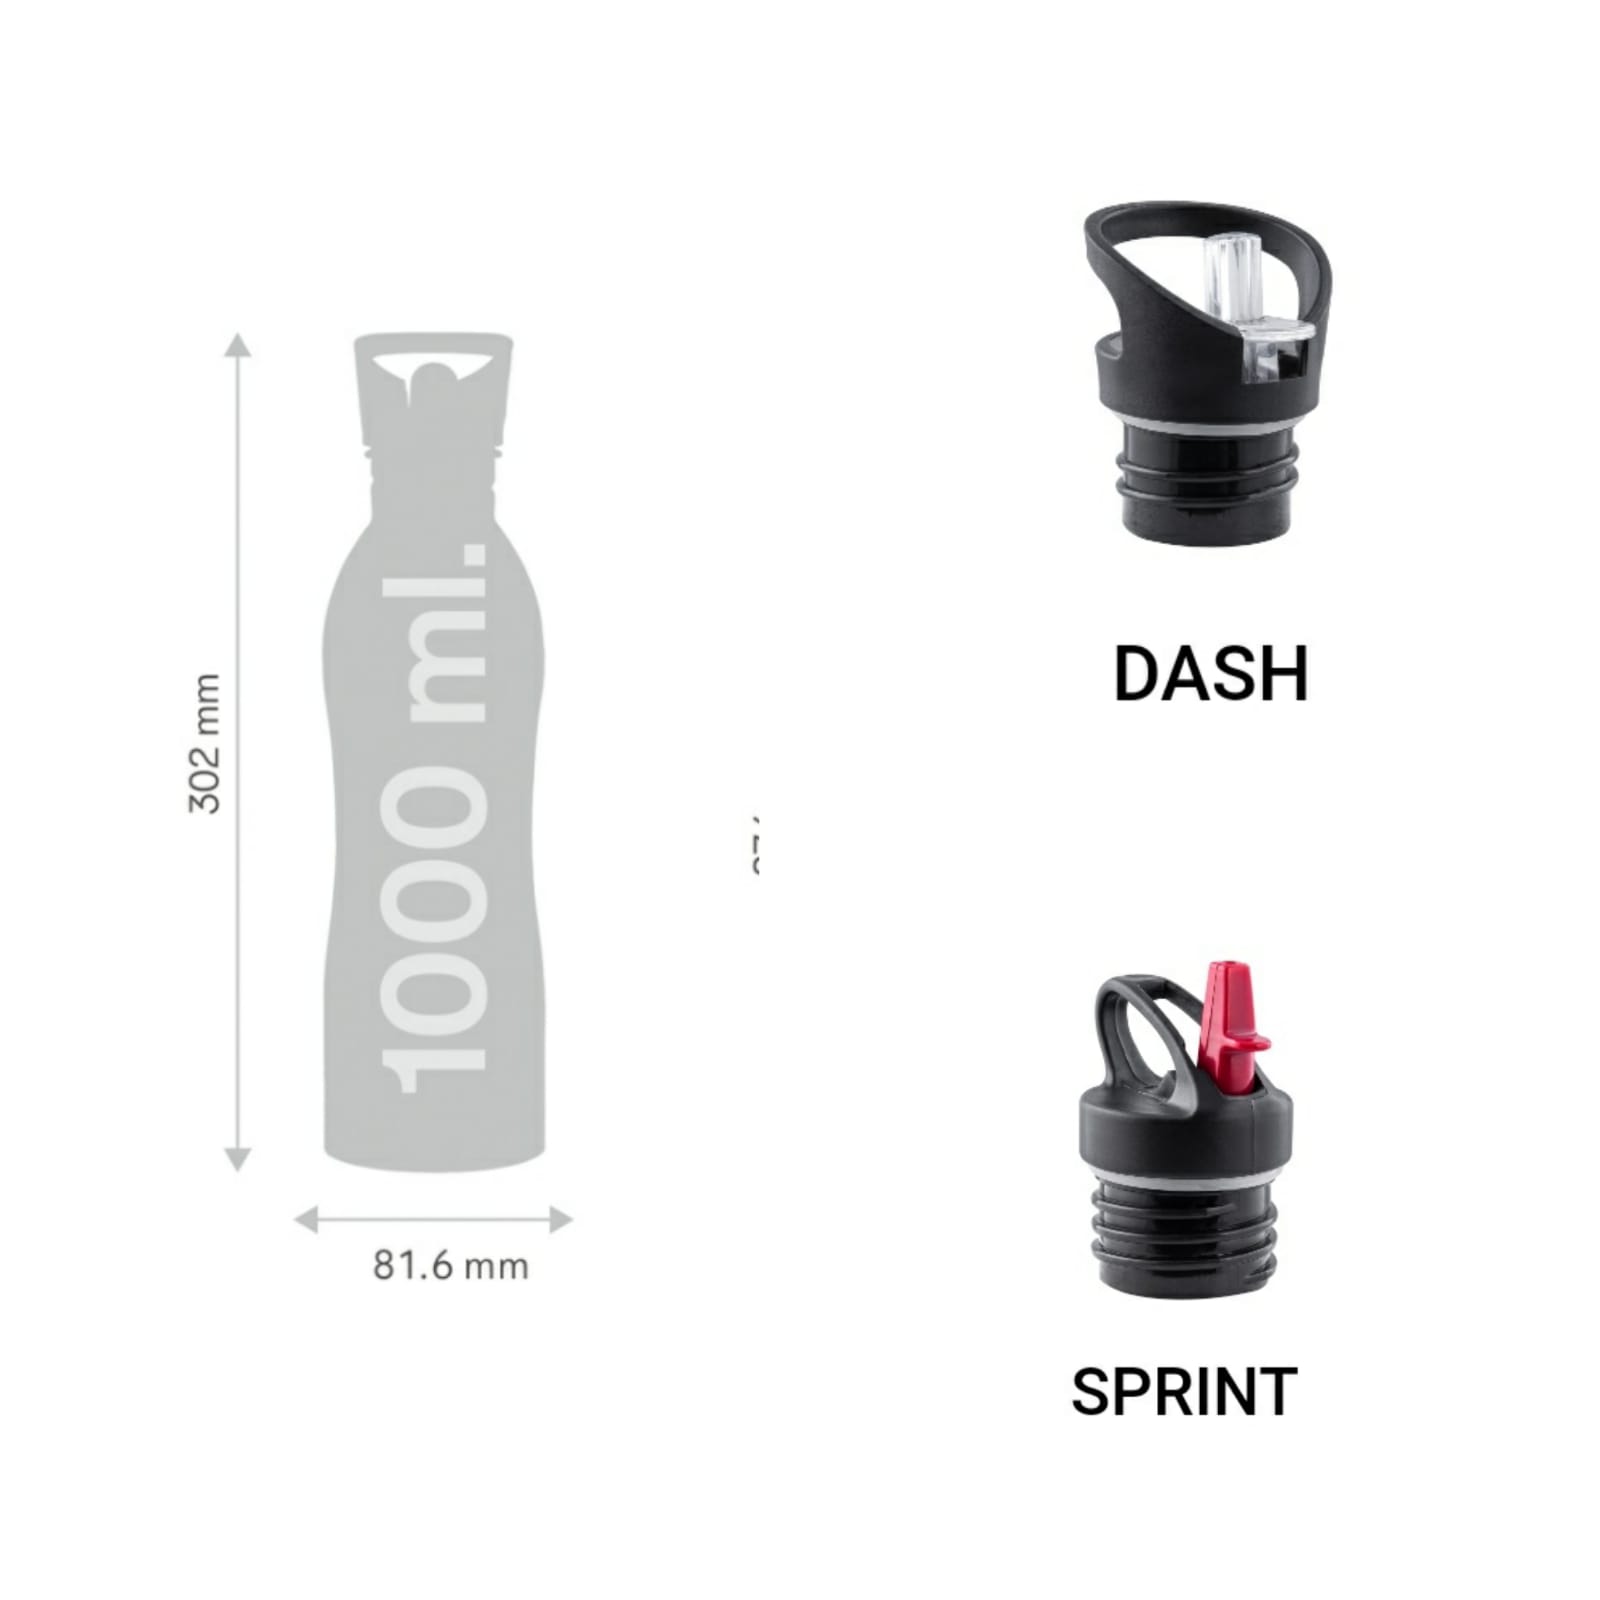 Nanobot Sports Stainless Steel Bottle Dash lid 1000ml 